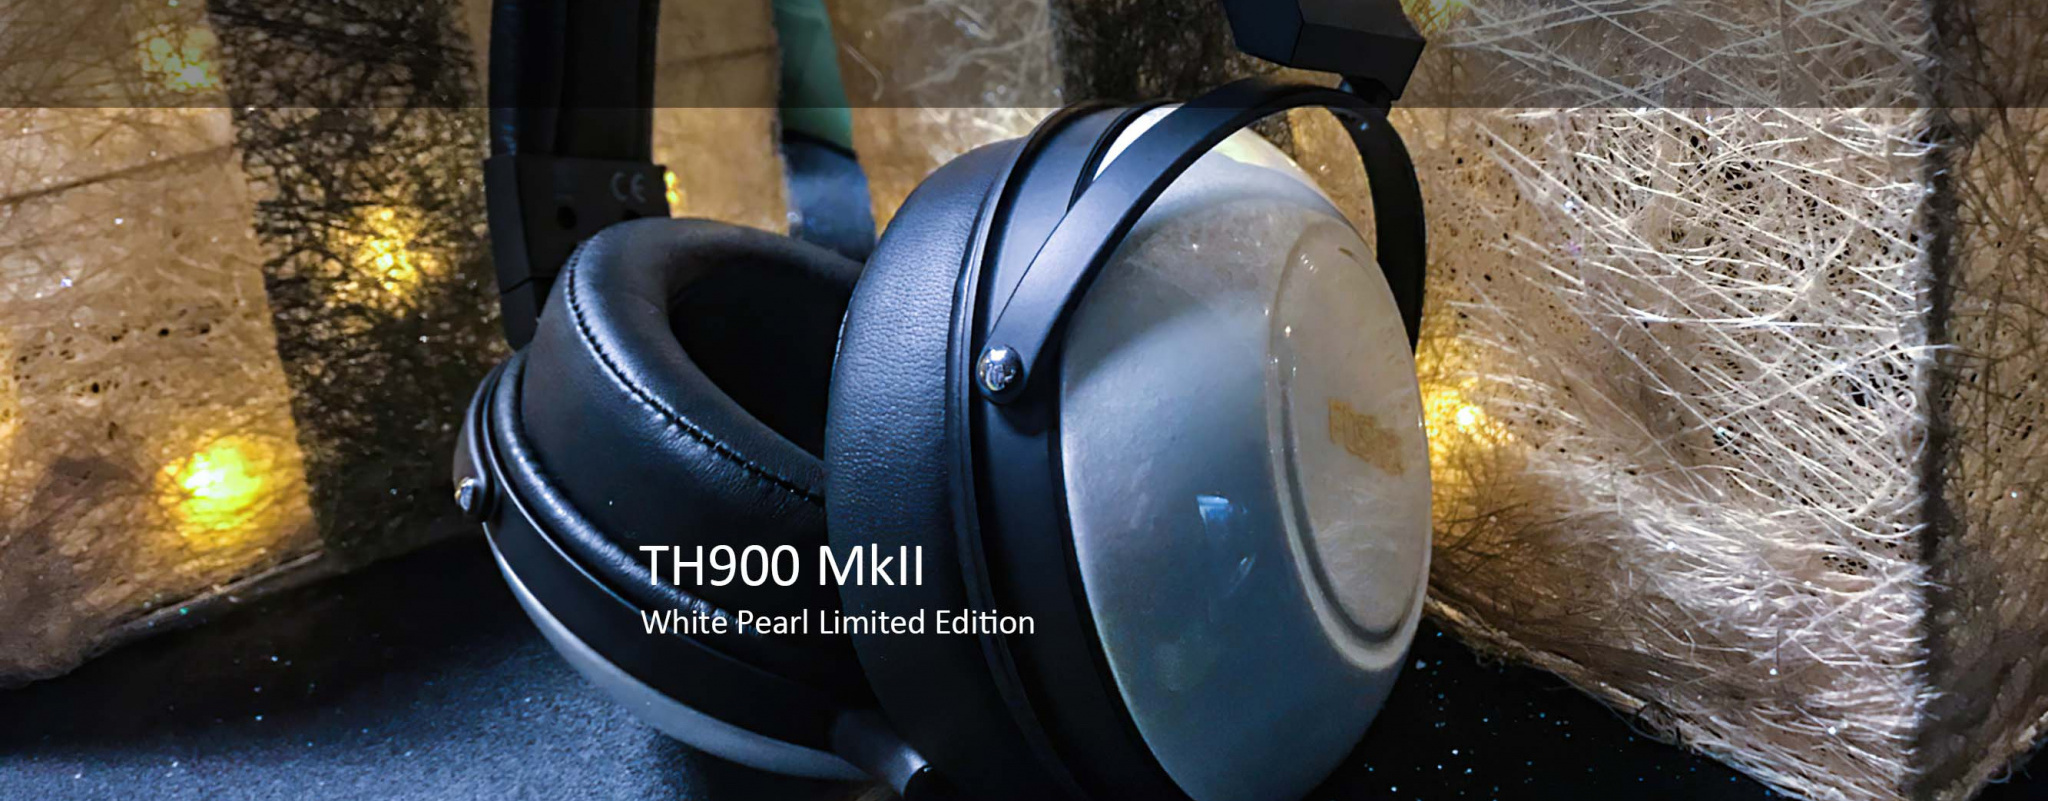 Fostex TH900 mkII White Pearl Edition